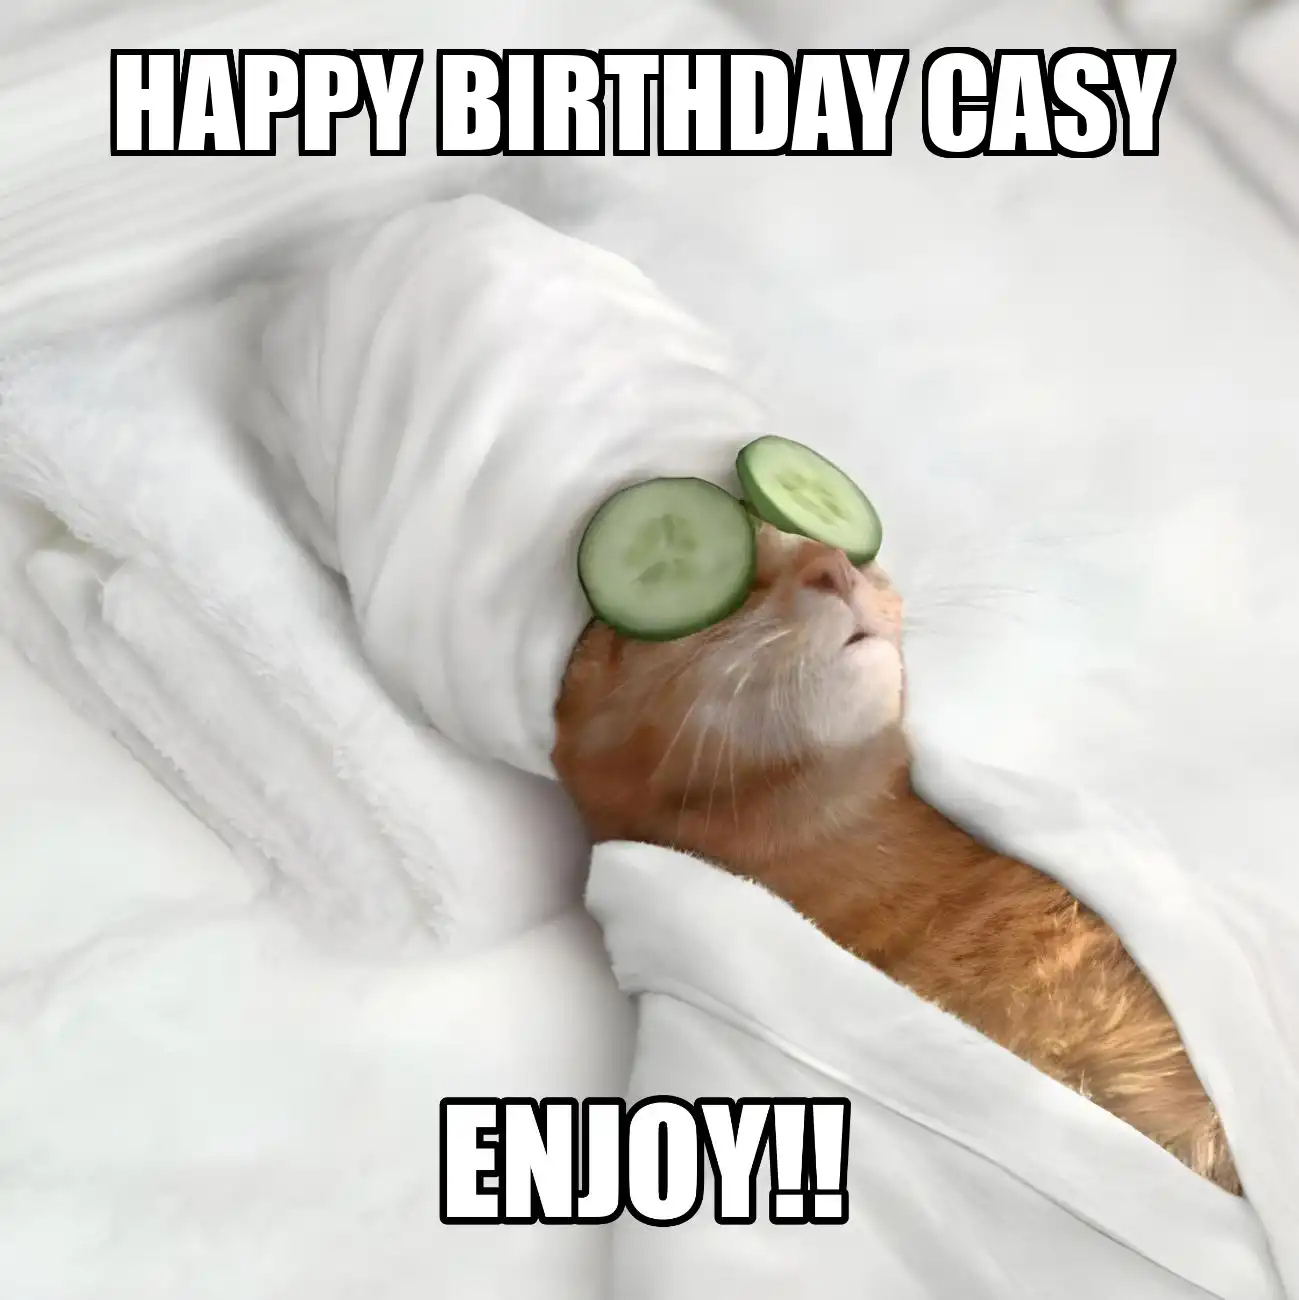 Happy Birthday Casy Enjoy Cat Meme